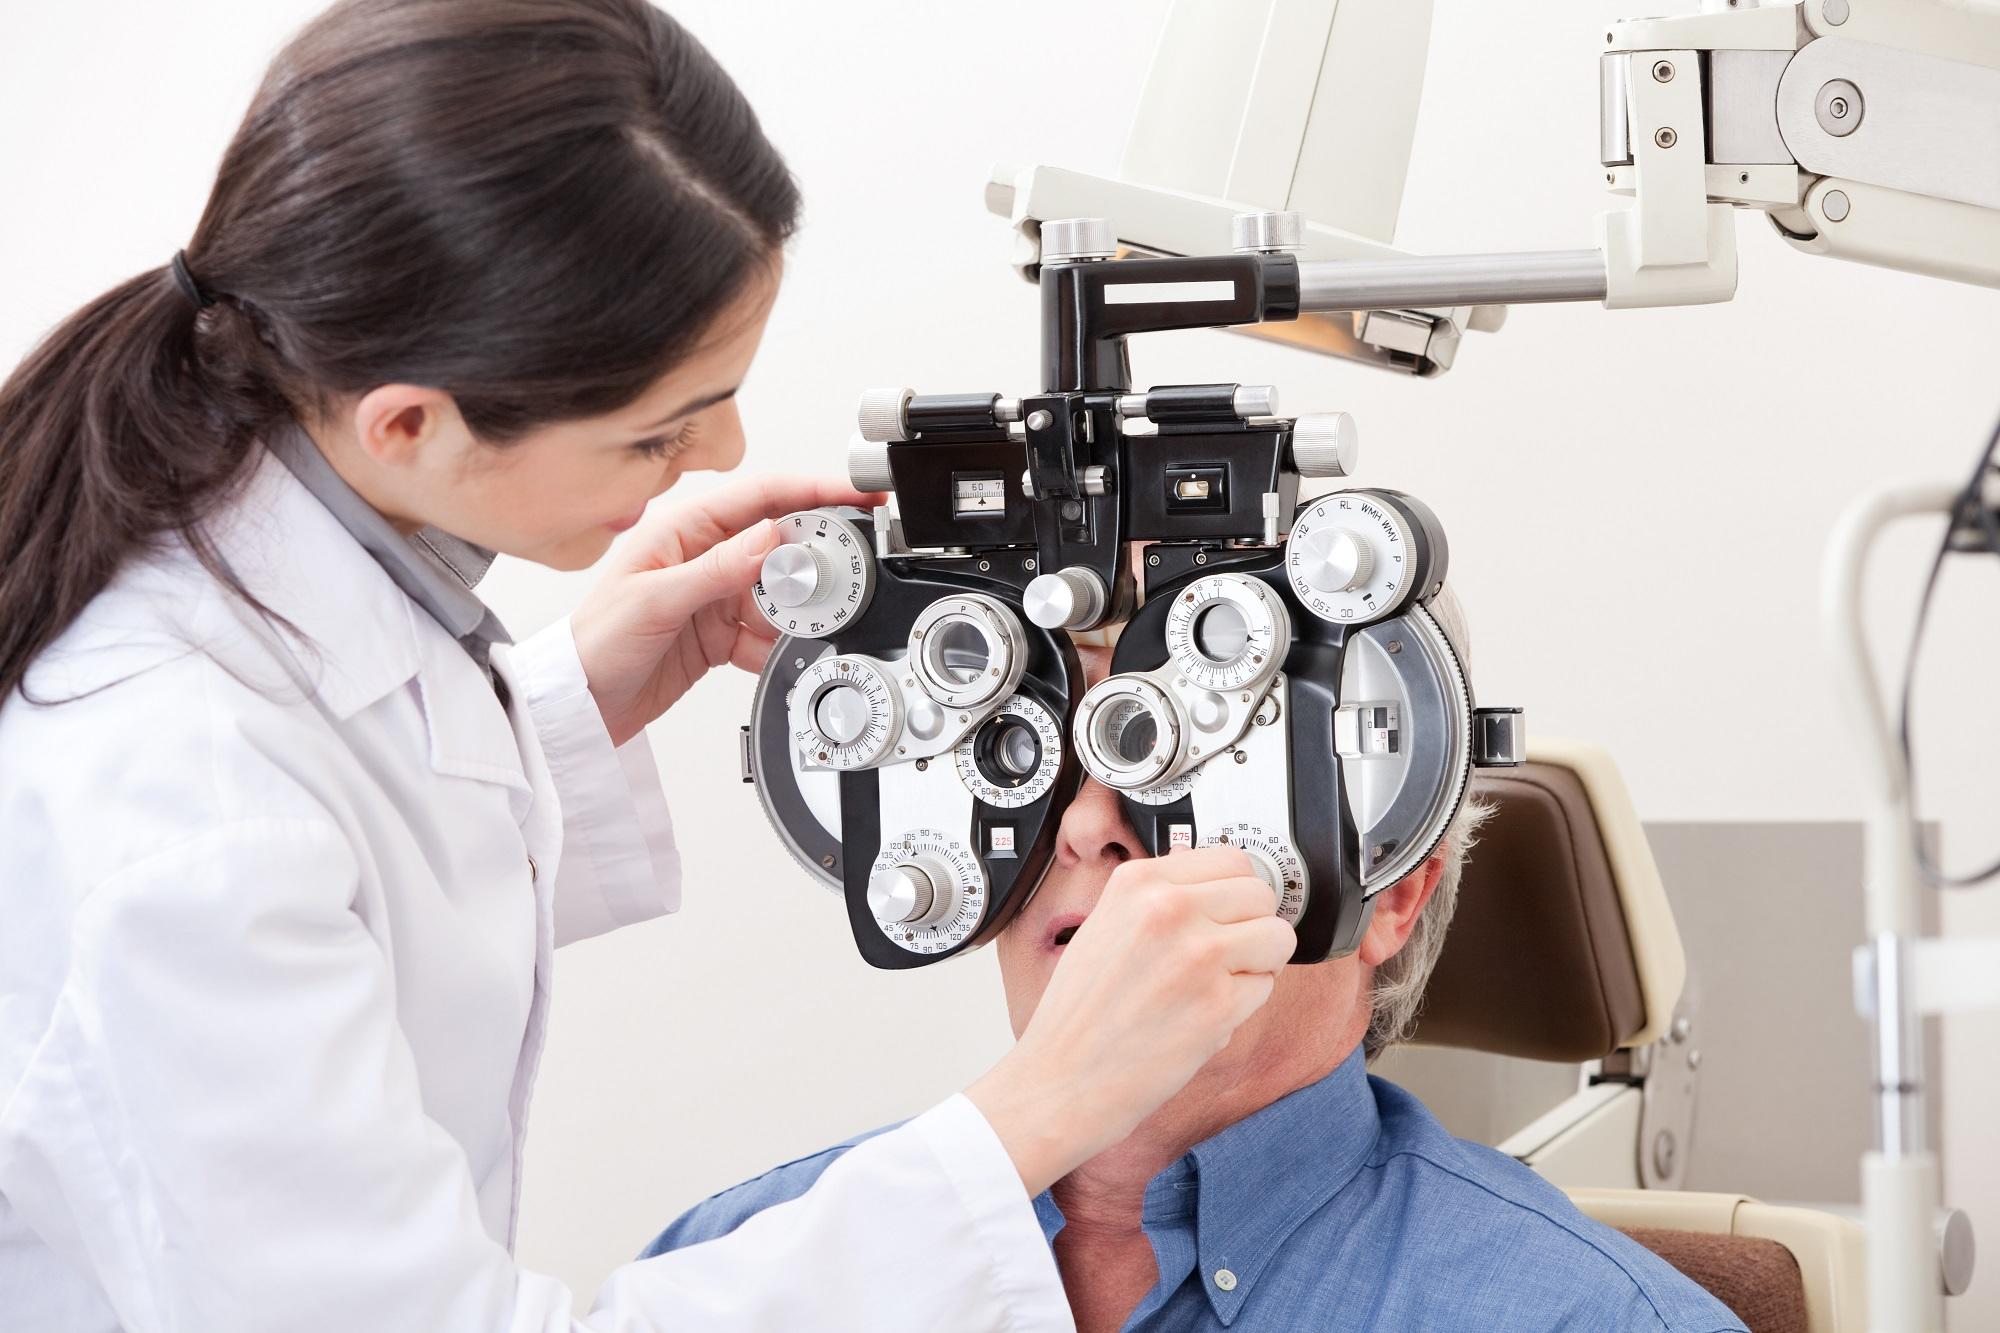 منظمة الصحة العالمية دعت إلى توفير مبلغ قدره 14.3 مليار دولار لعلاج المتراكم من حالات الإصابة بضعف البصر أو العمى. (shutterstock)